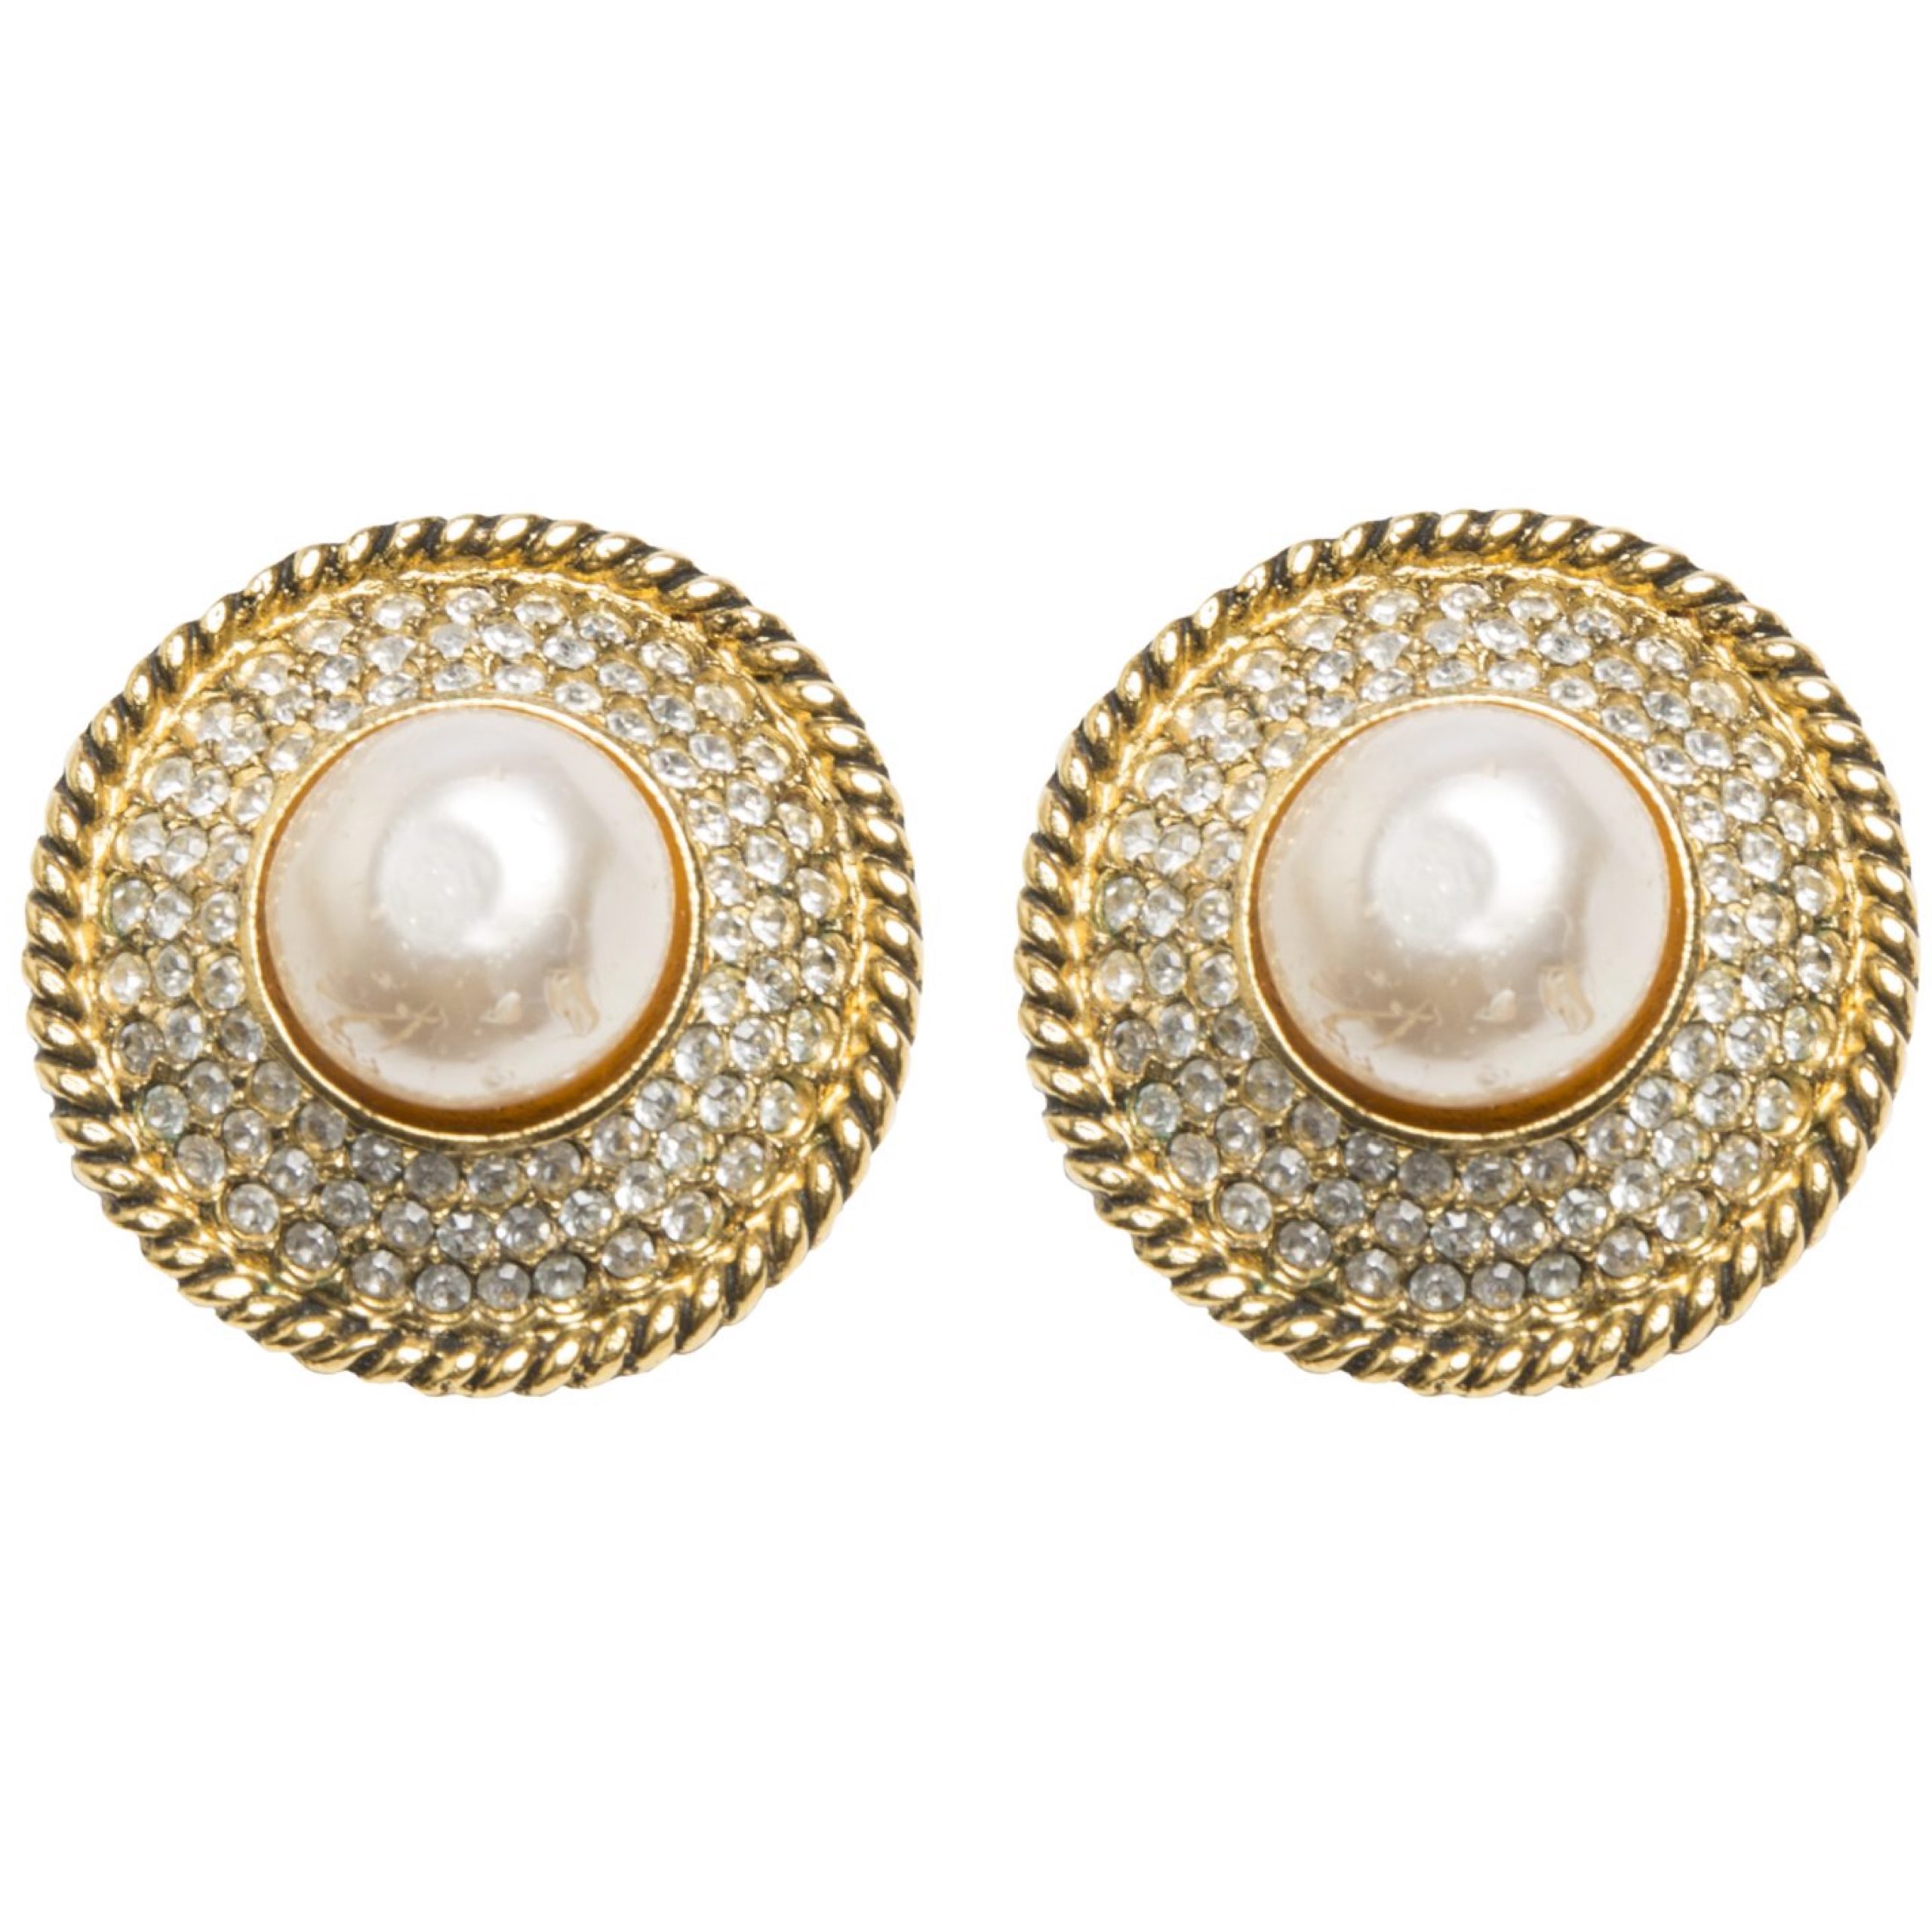 Vintage rhinestone pearl earrings